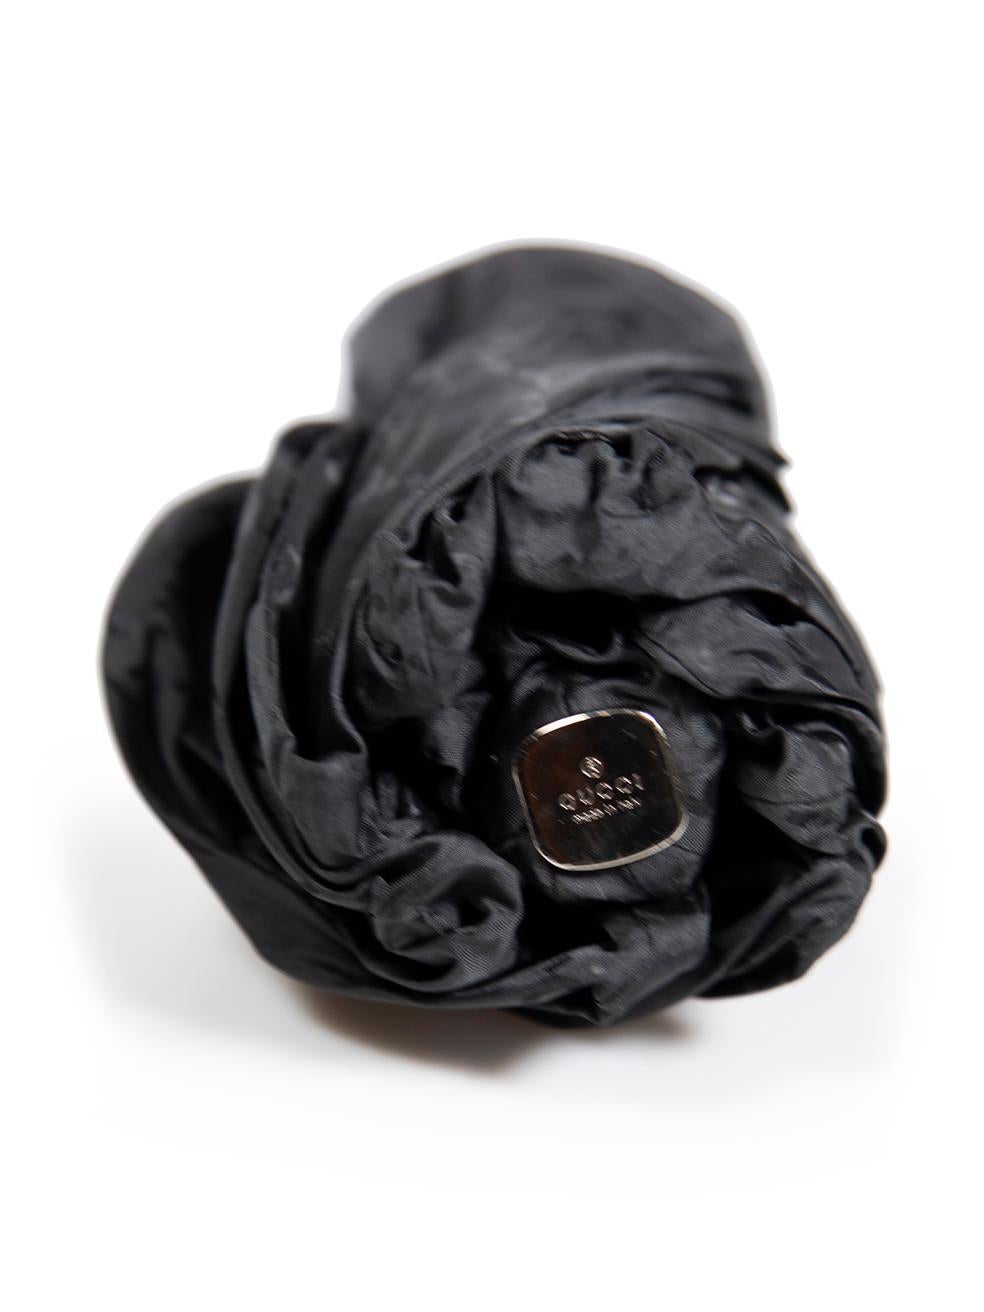 Gucci Black Supreme GG Monogram Umbrella In Good Condition For Sale In London, GB